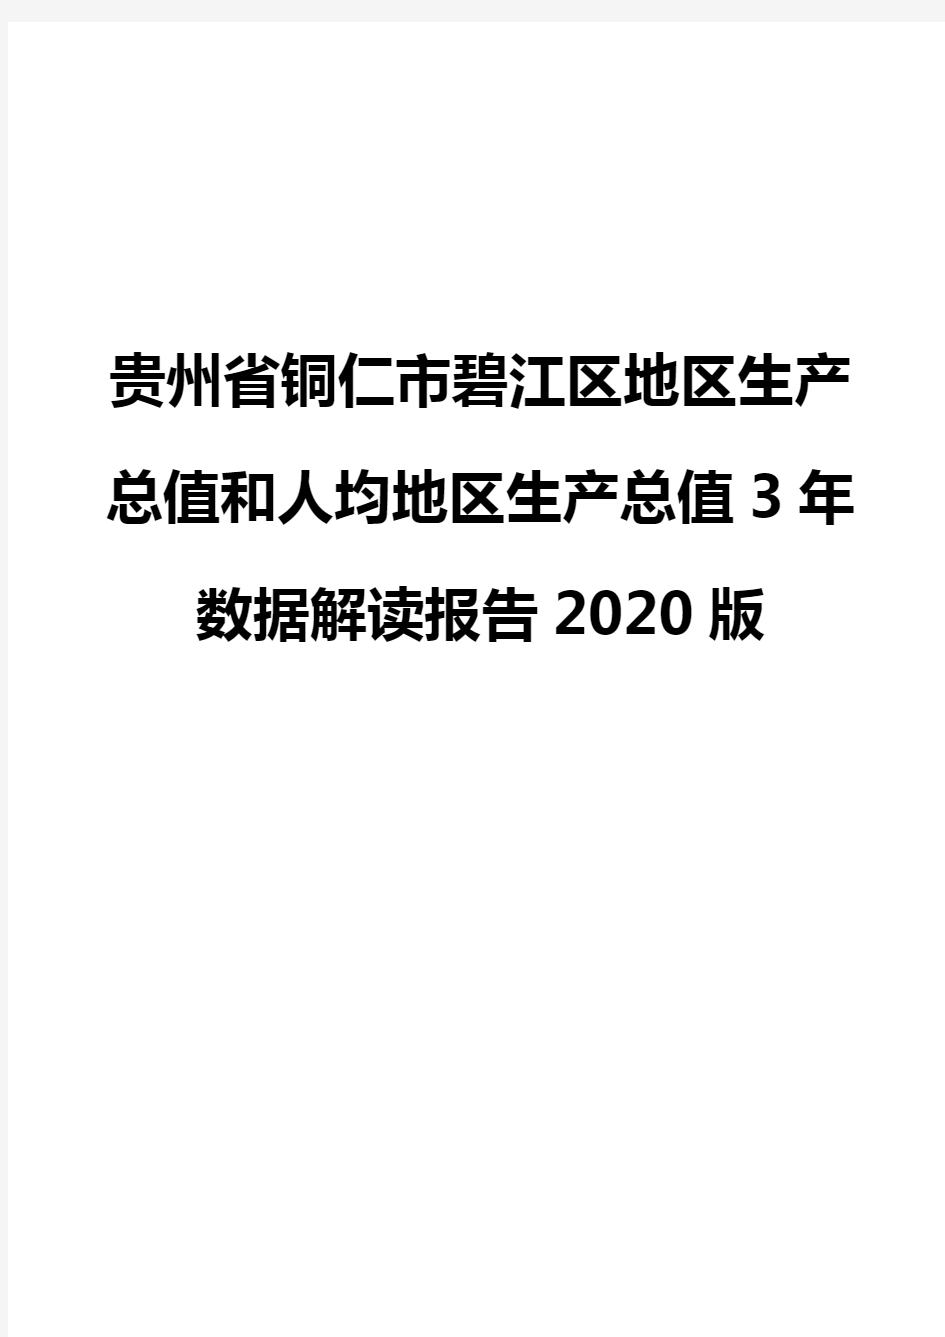 贵州省铜仁市碧江区地区生产总值和人均地区生产总值3年数据解读报告2020版